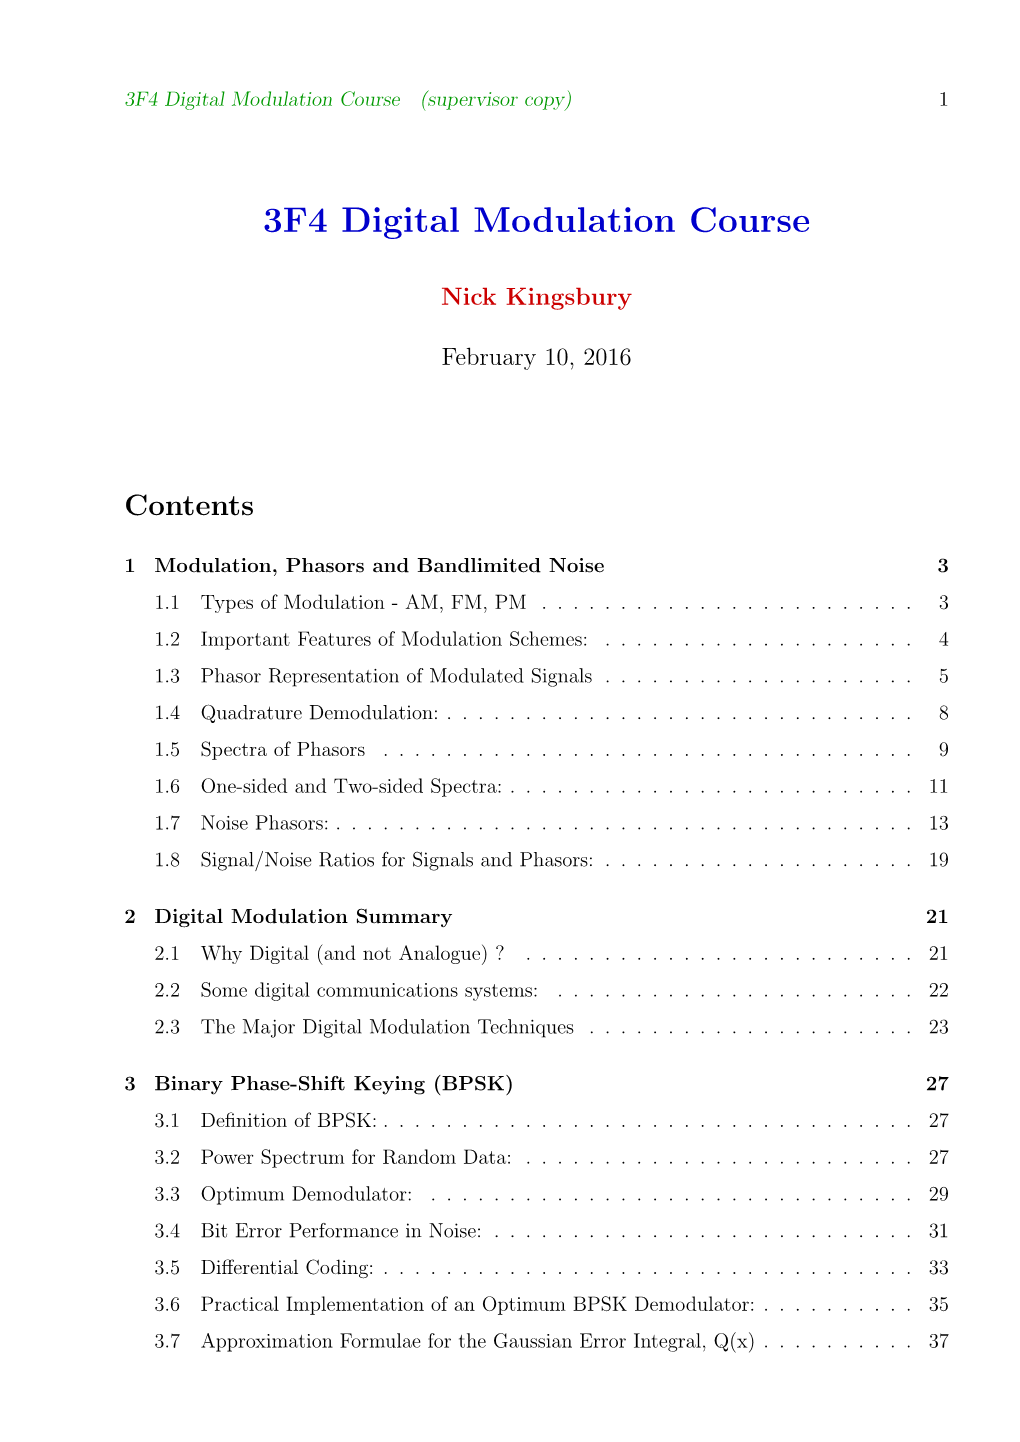 3F4 Digital Modulation Course (Supervisor Copy) 1